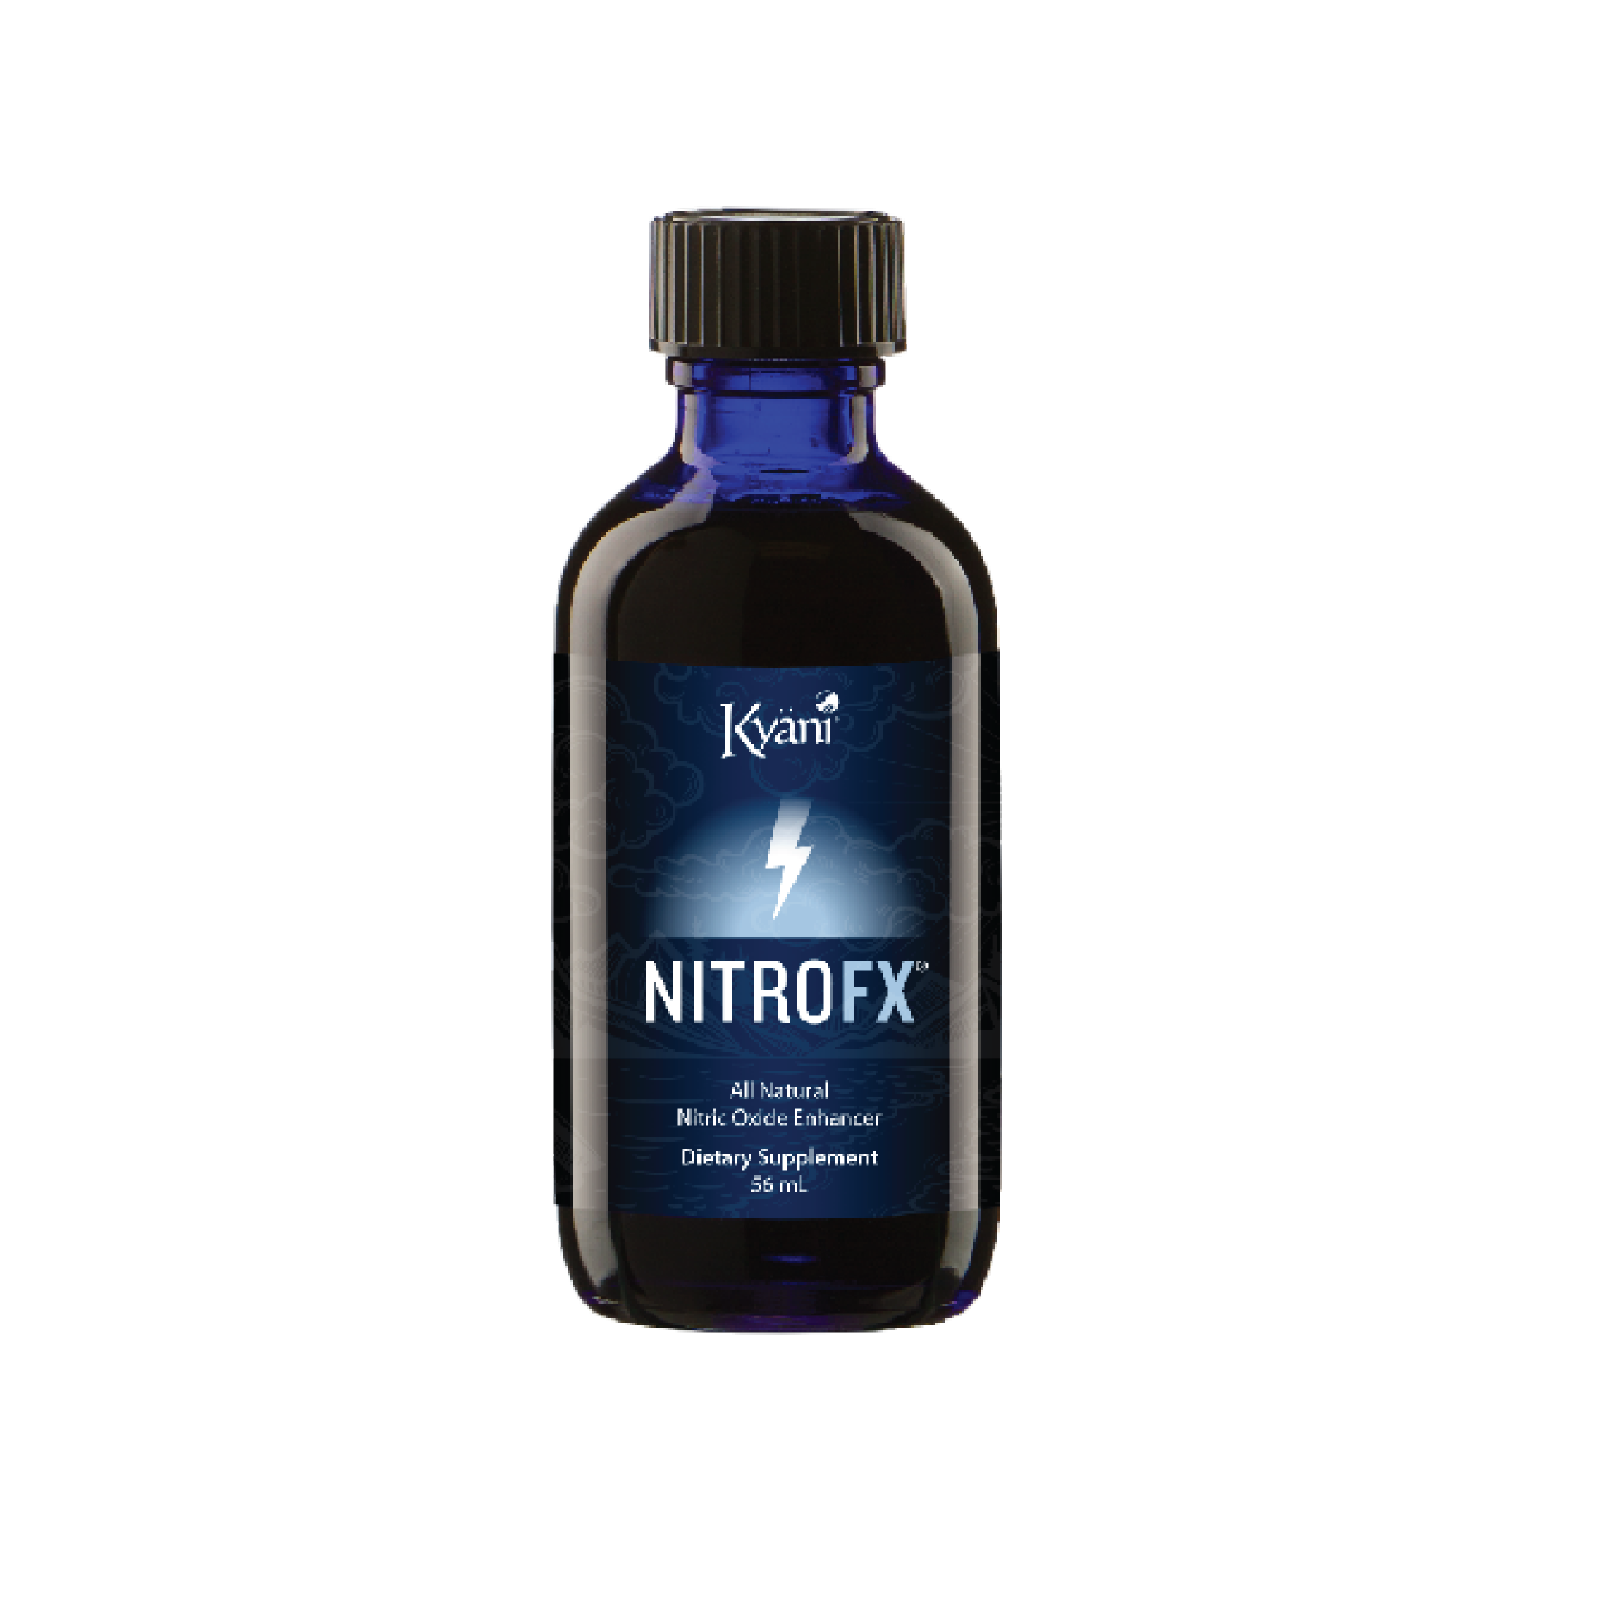 Nitro FX (56 mL)